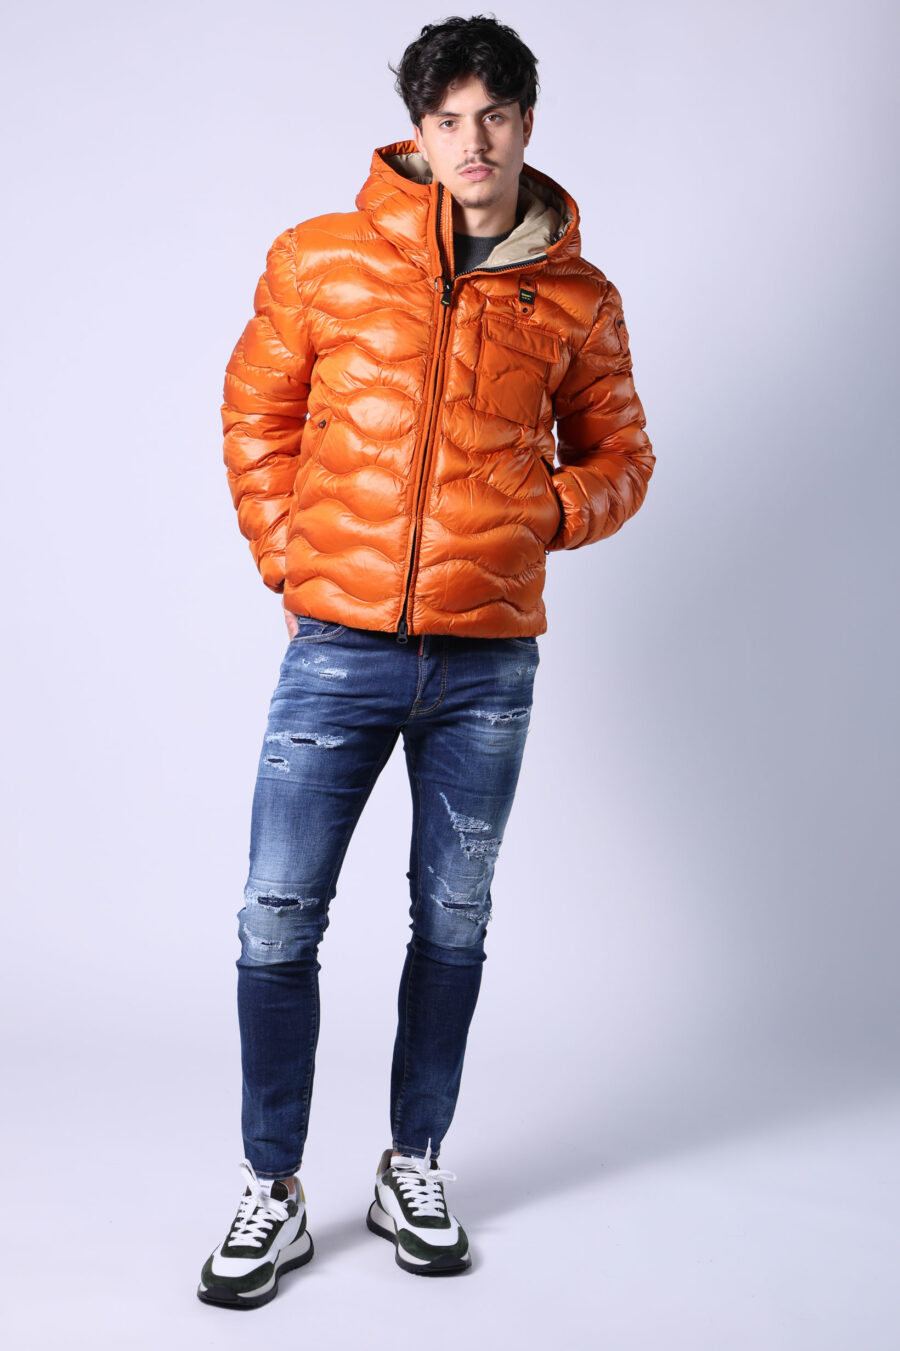 Orangefarbene Kapuzenpulli-Jacke mit Wellenlinien und beigem Futter - Untitled Catalog 05593